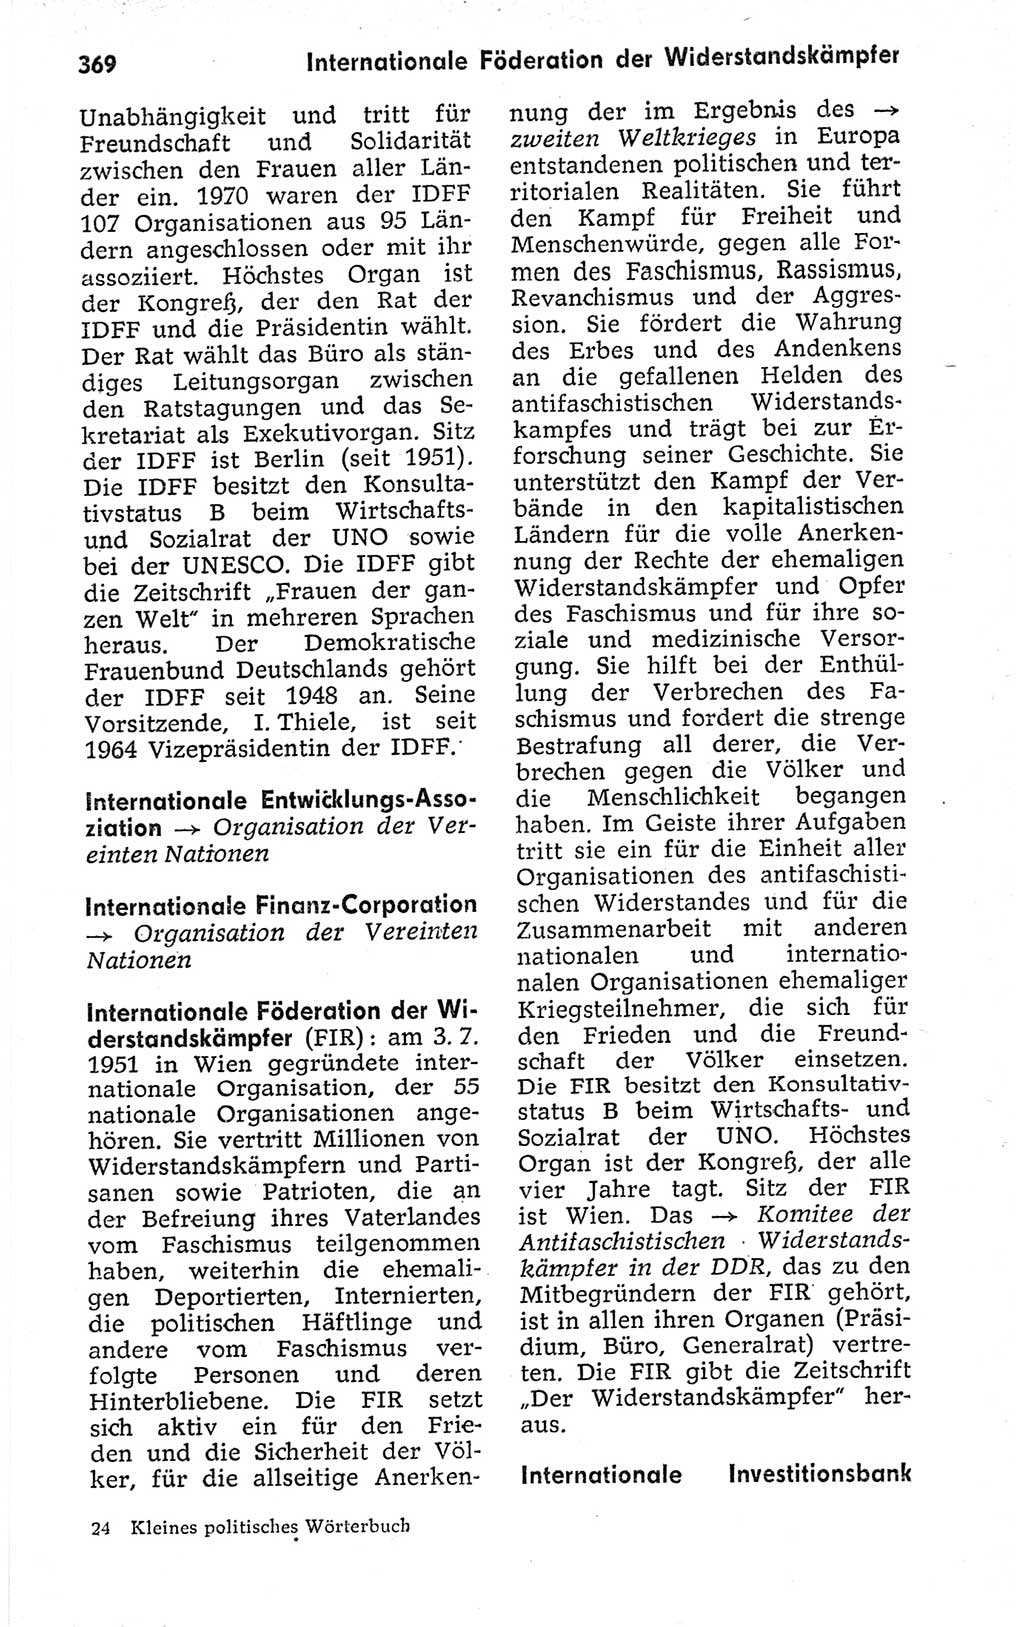 Kleines politisches Wörterbuch [Deutsche Demokratische Republik (DDR)] 1973, Seite 369 (Kl. pol. Wb. DDR 1973, S. 369)